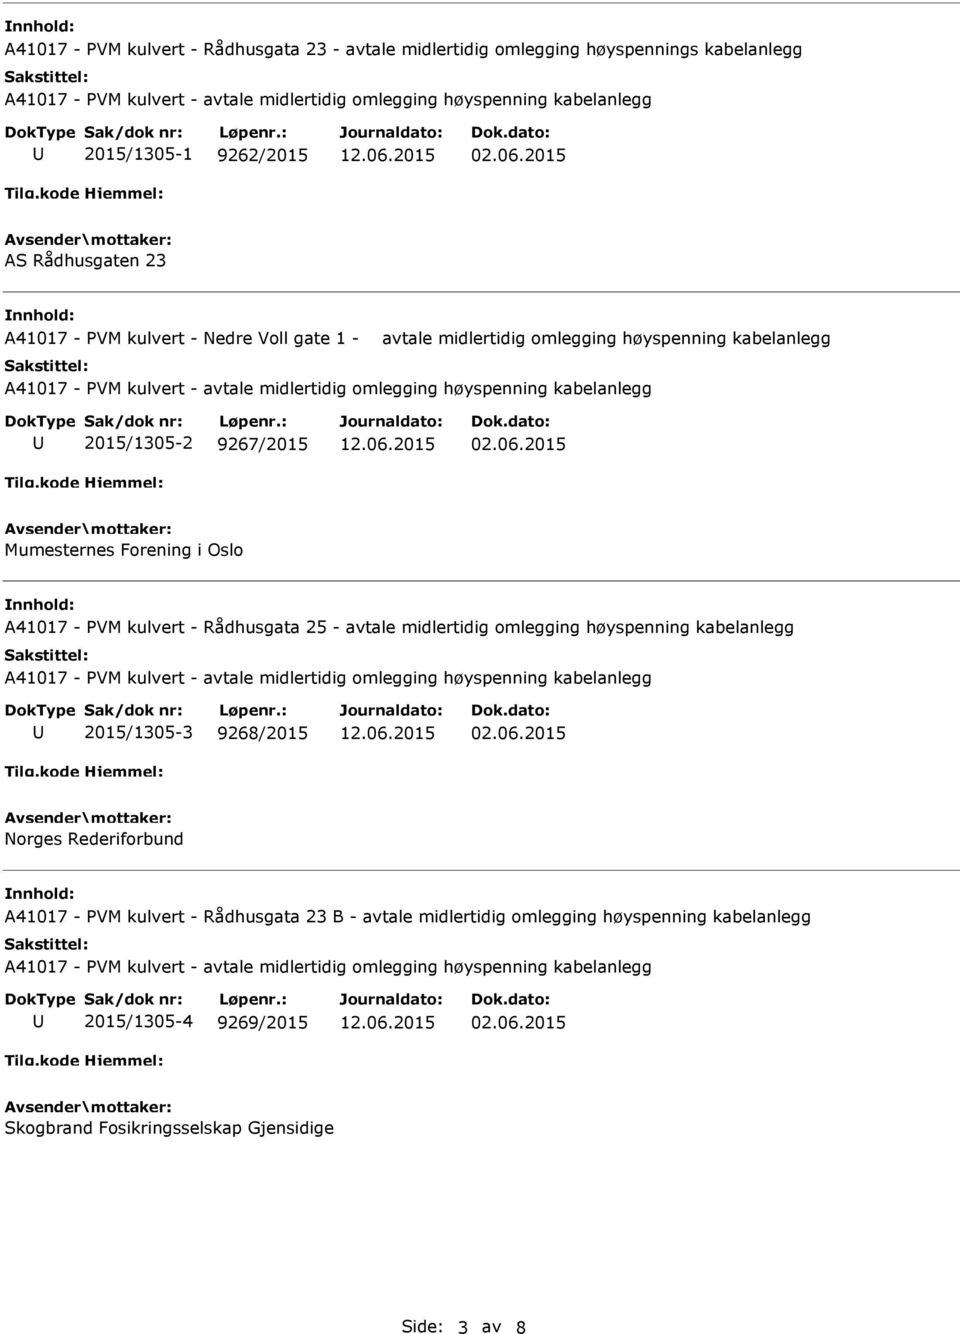 2015 Mumesternes Forening i Oslo A41017 - PVM kulvert - Rådhusgata 25 - avtale midlertidig omlegging høyspenning kabelanlegg 2015/1305-3 9268/2015 02.06.